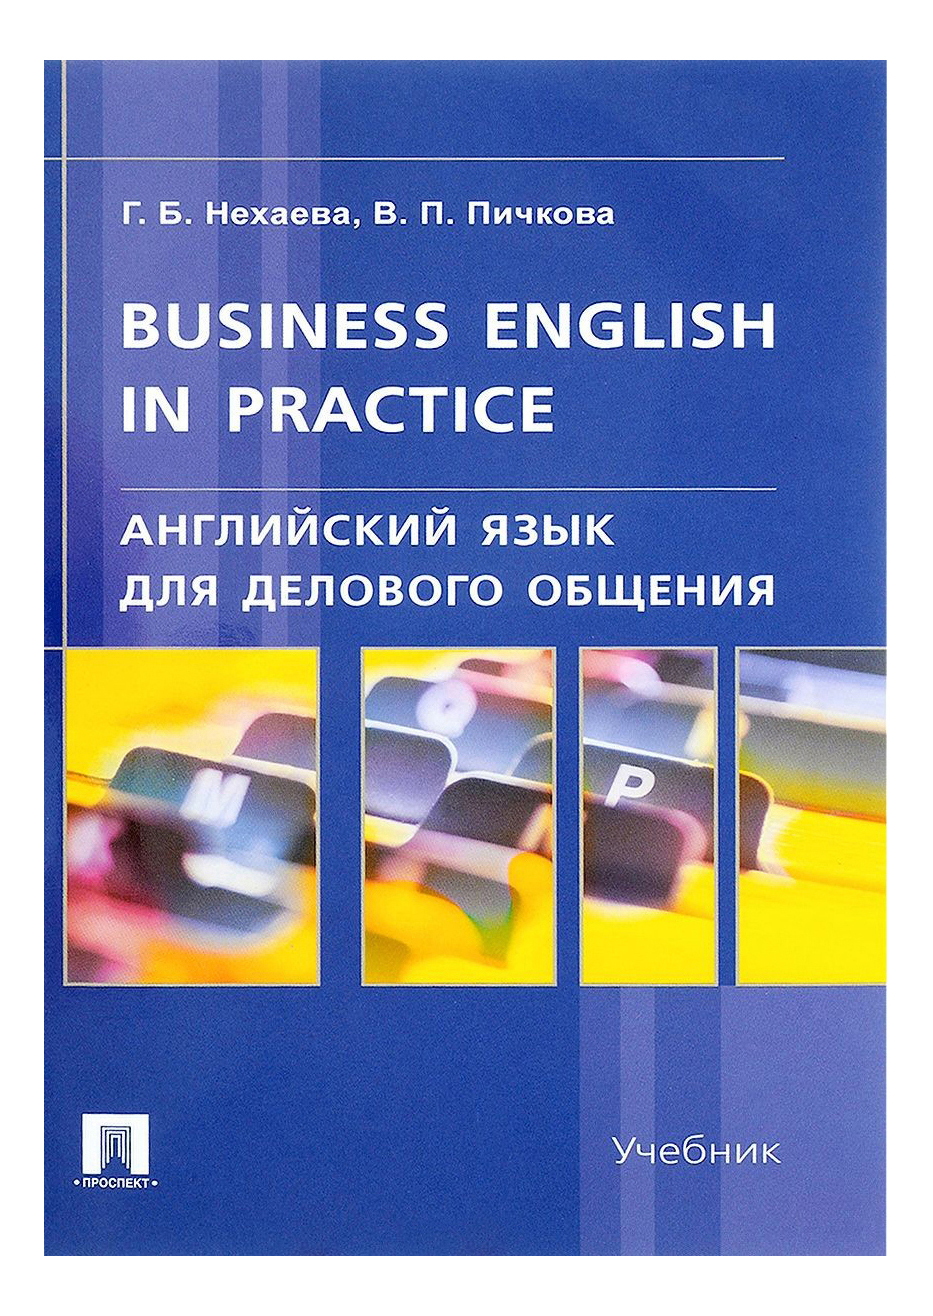 фото Английский язык для делового общения,business english in practice: учебник проспект